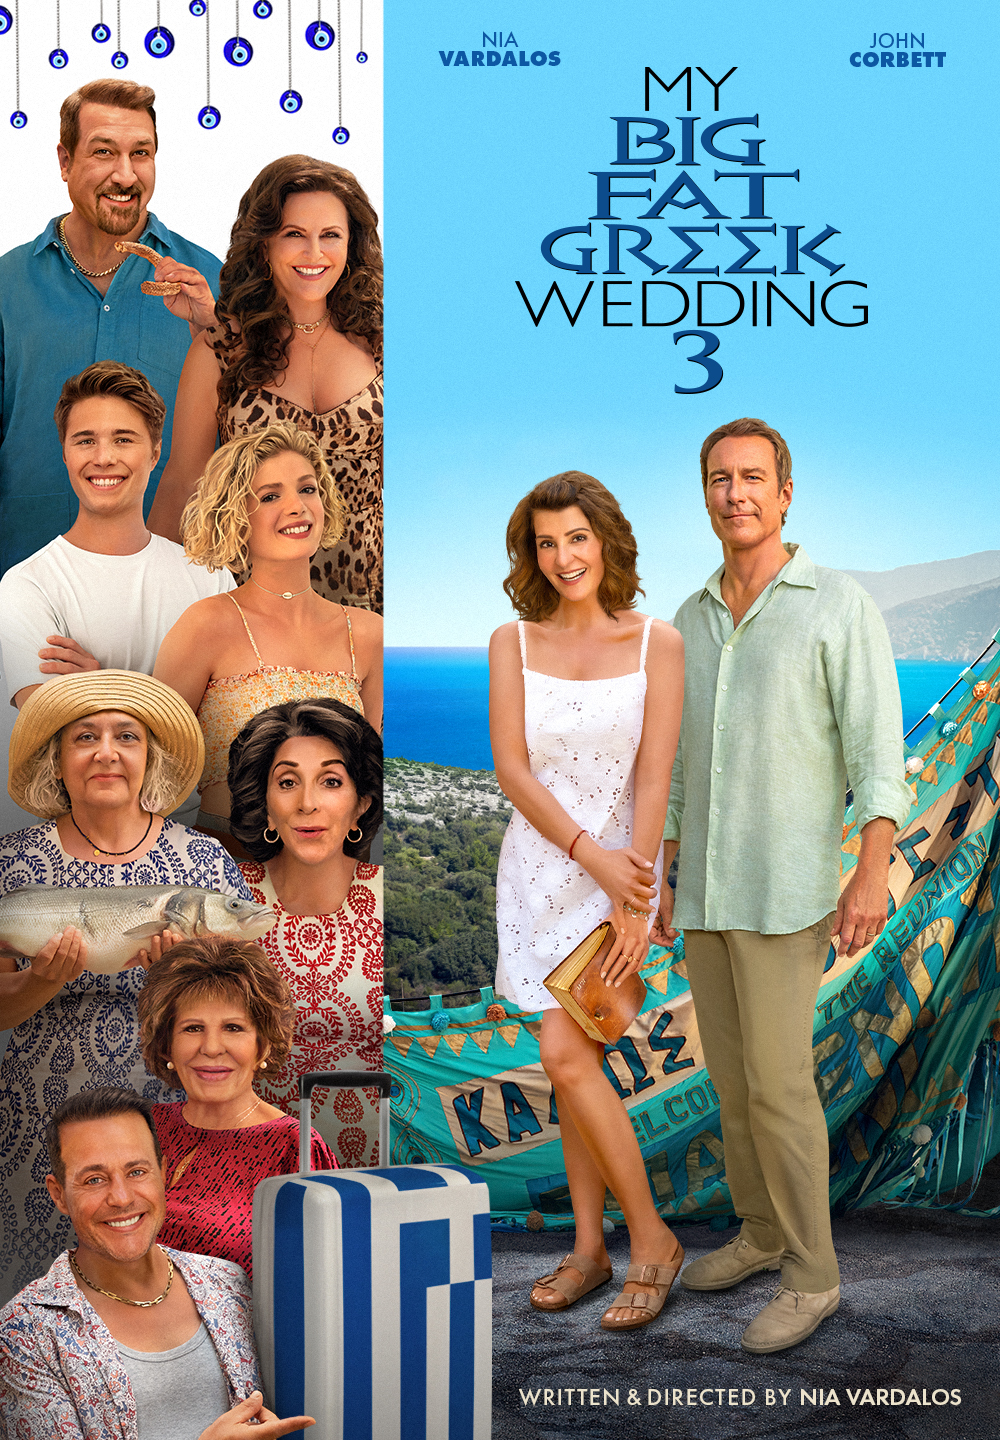 My Big Fat Greek Wedding 3 DVD cover